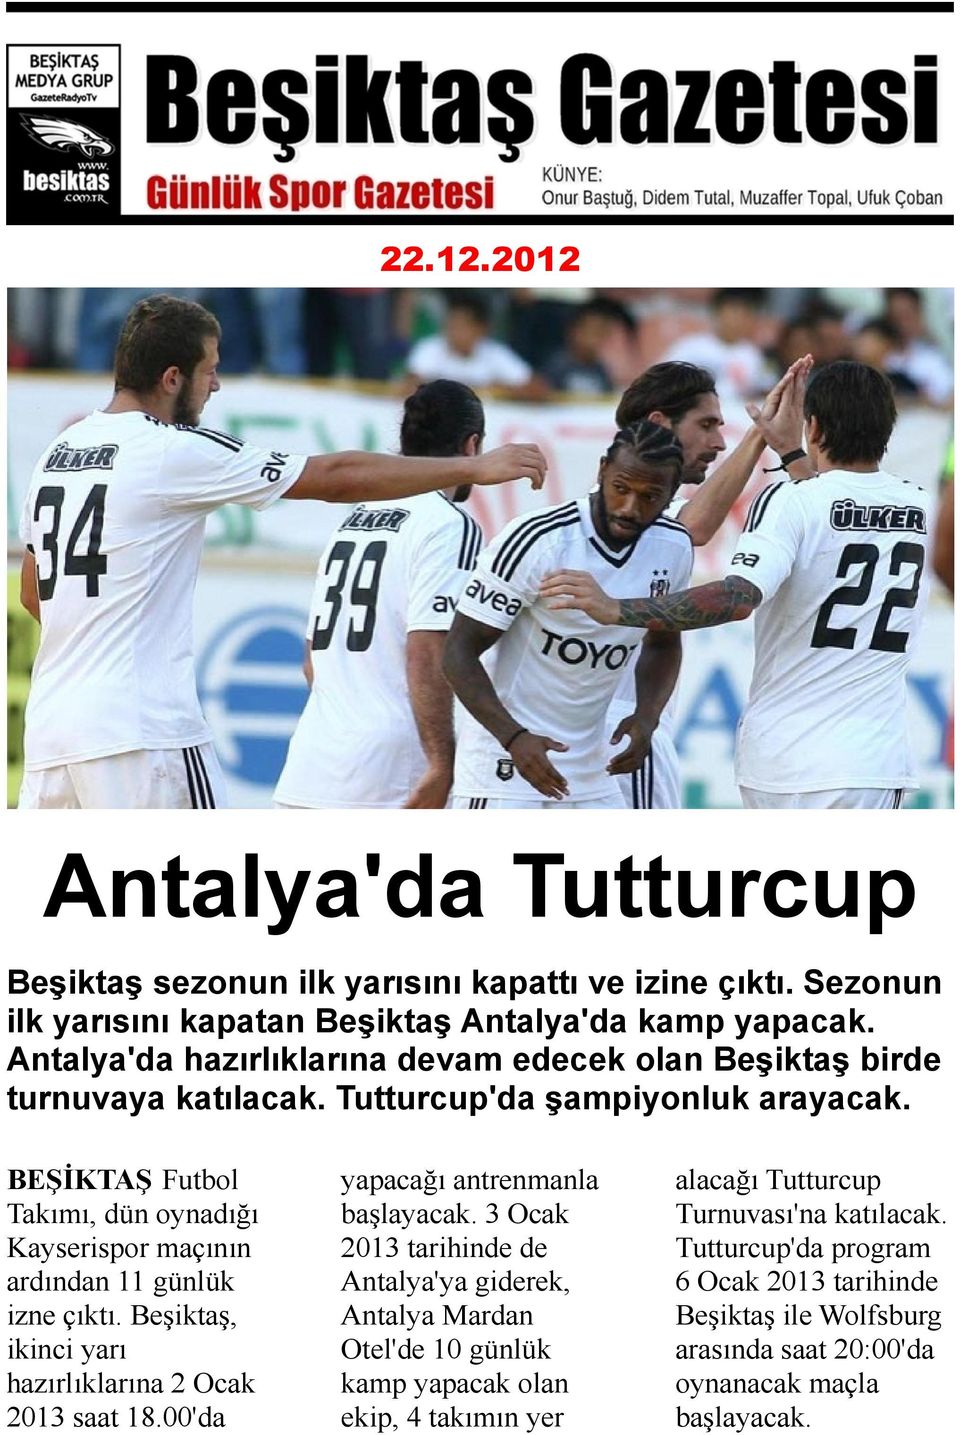 BEŞİKTAŞ Futbol Takımı, dün oynadığı Kayserispor maçının ardından 11 günlük izne çıktı. Beşiktaş, ikinci yarı hazırlıklarına 2 Ocak 2013 saat 18.